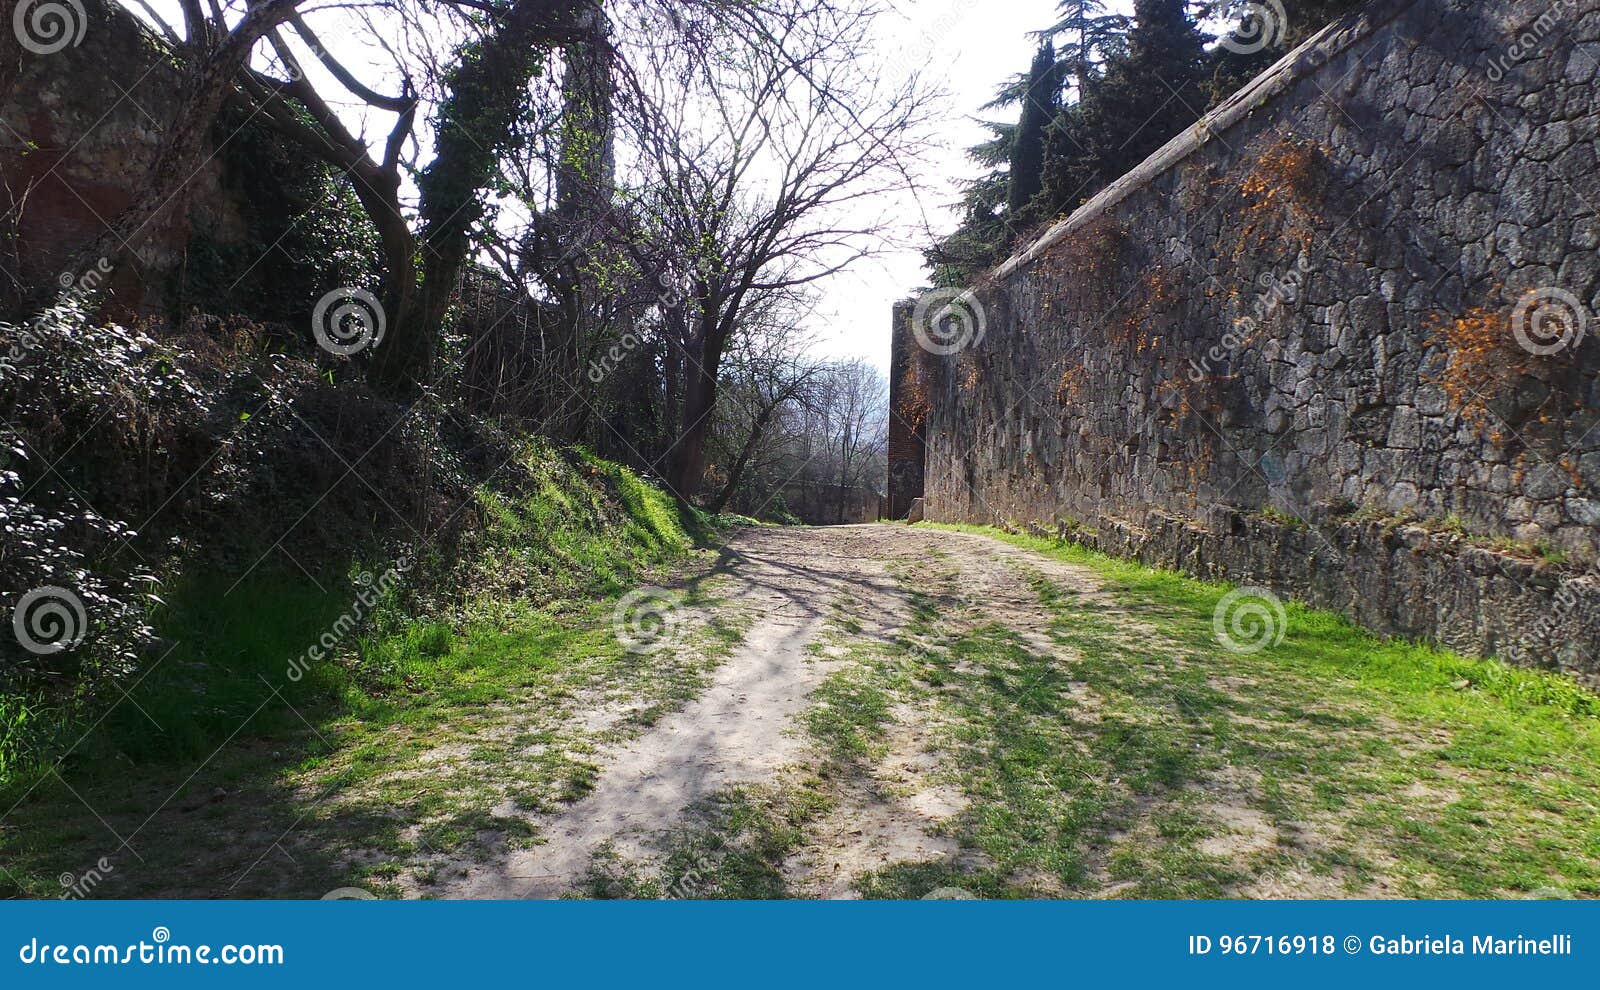 ancient walls of verona